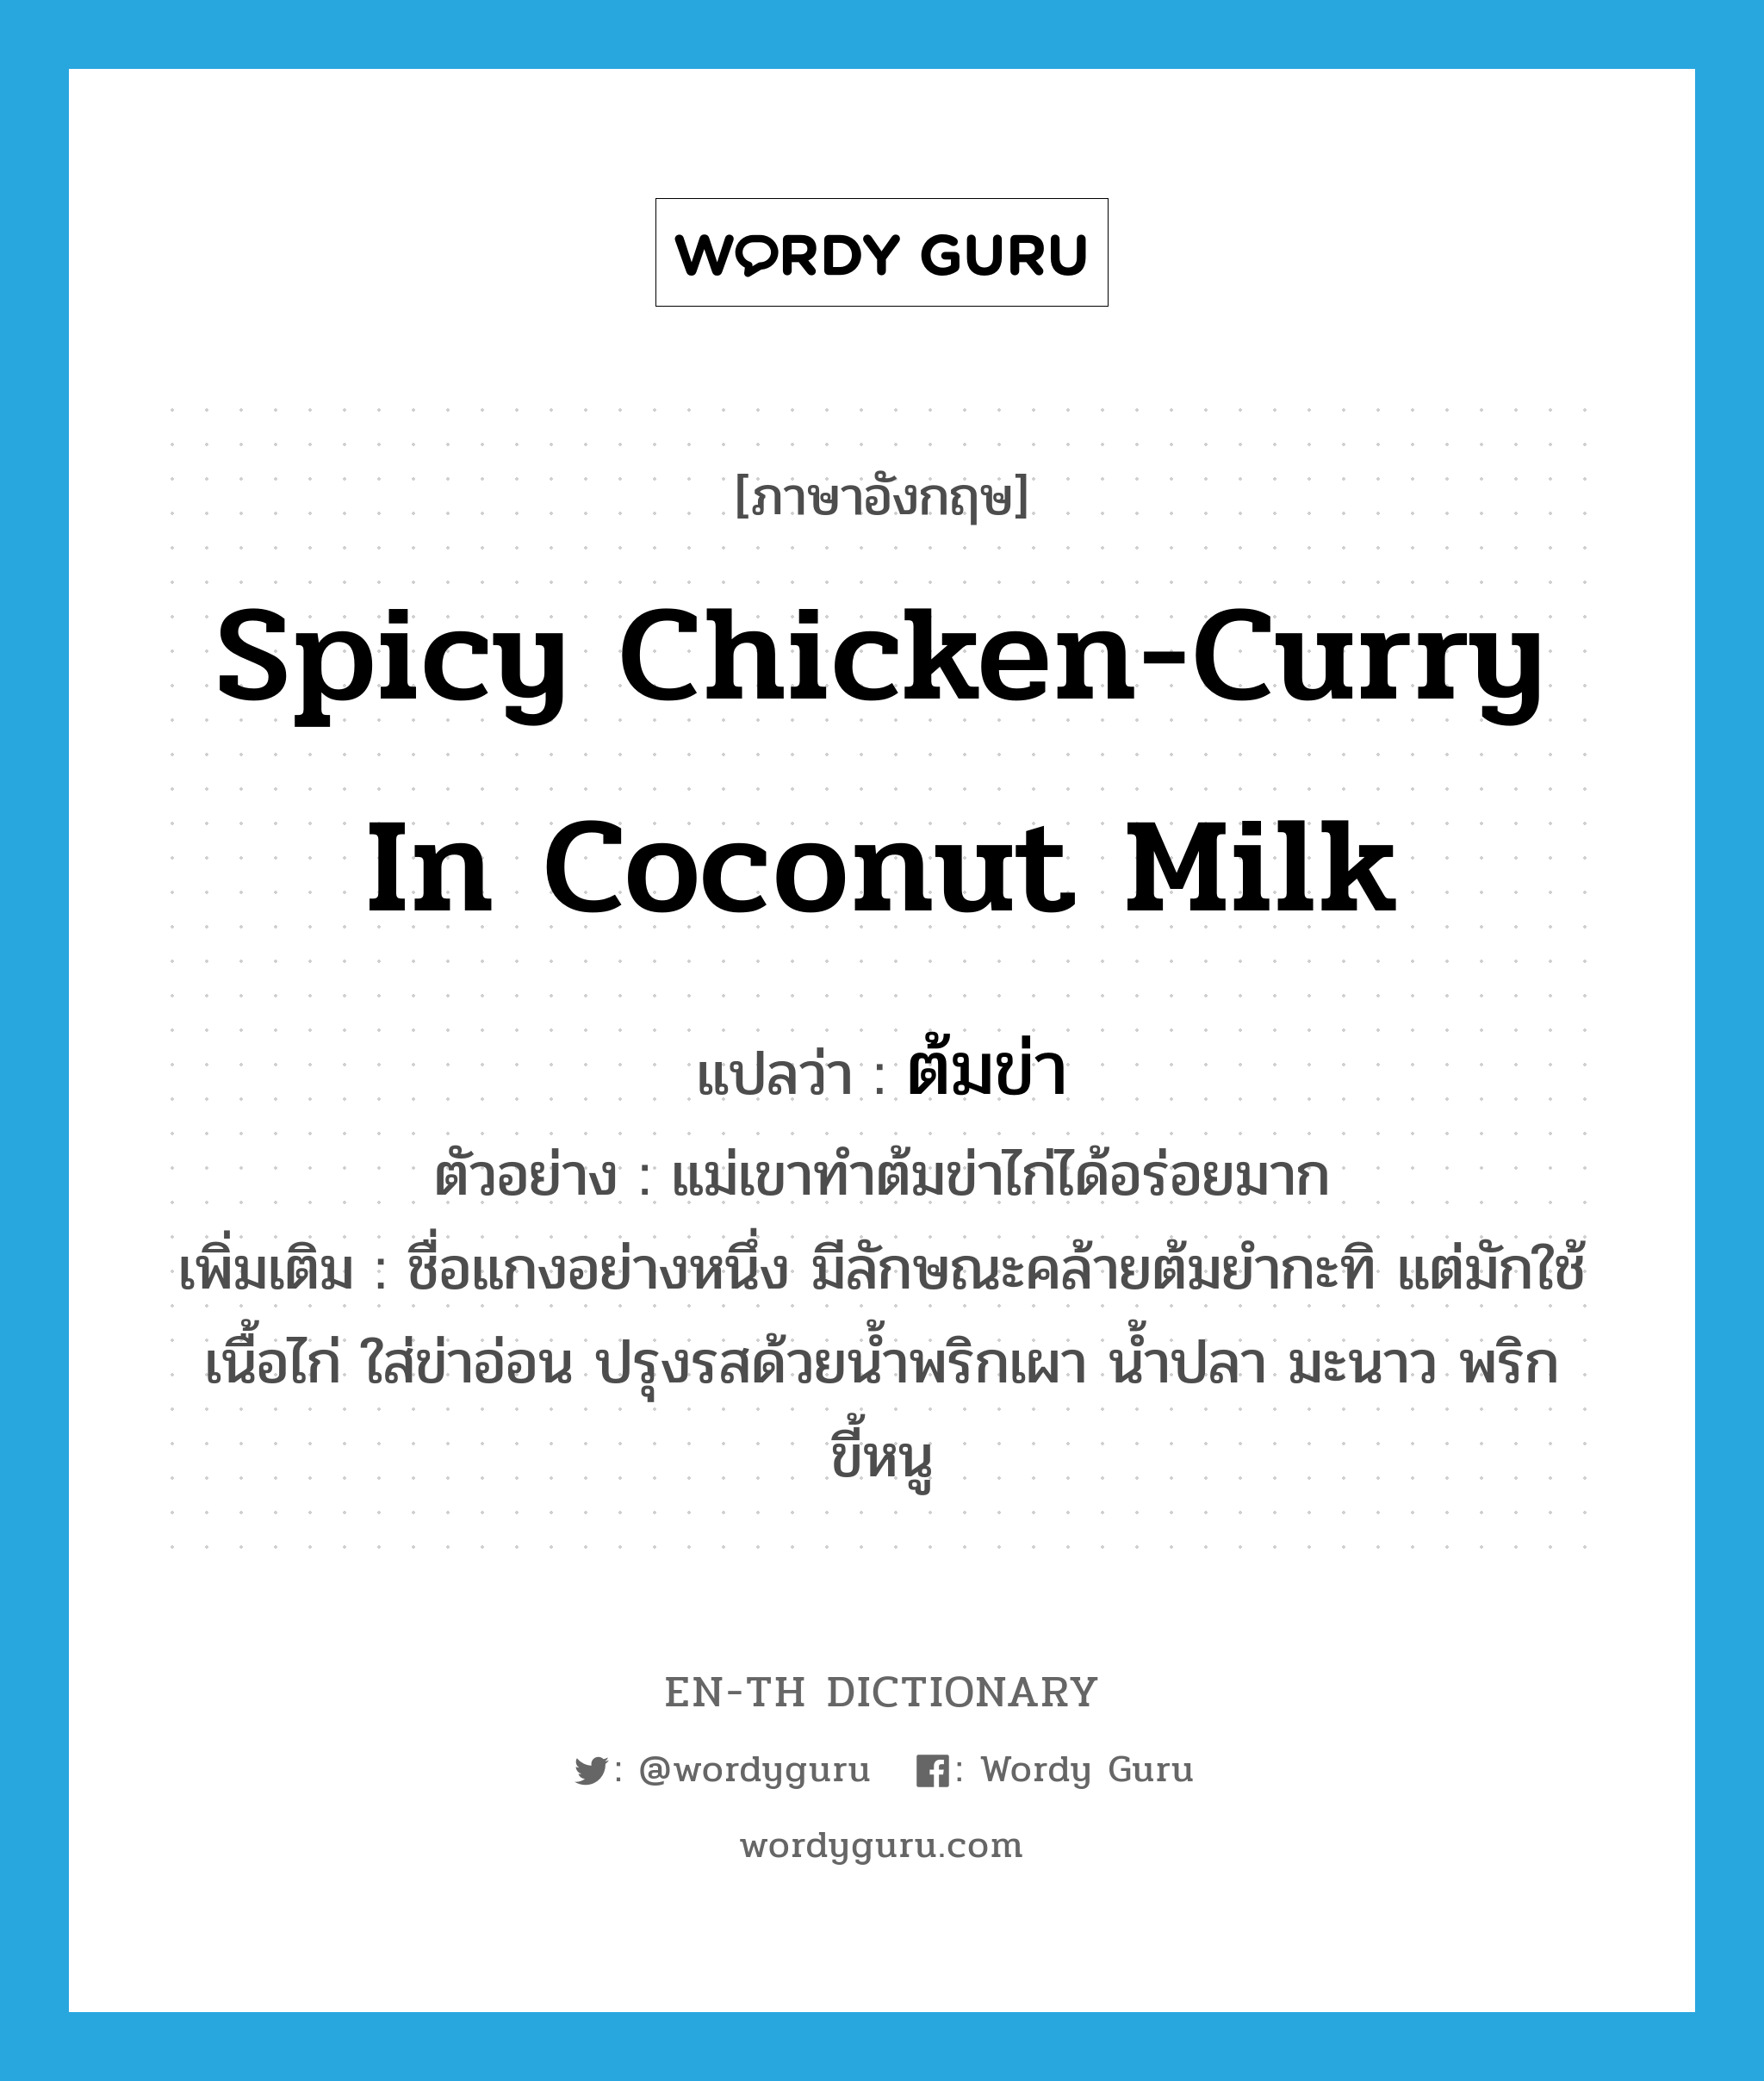 spicy chicken-curry in coconut milk แปลว่า?, คำศัพท์ภาษาอังกฤษ spicy chicken-curry in coconut milk แปลว่า ต้มข่า ประเภท N ตัวอย่าง แม่เขาทำต้มข่าไก่ได้อร่อยมาก เพิ่มเติม ชื่อแกงอย่างหนึ่ง มีลักษณะคล้ายต้มยำกะทิ แต่มักใช้เนื้อไก่ ใส่ข่าอ่อน ปรุงรสด้วยน้ำพริกเผา น้ำปลา มะนาว พริกขี้หนู หมวด N